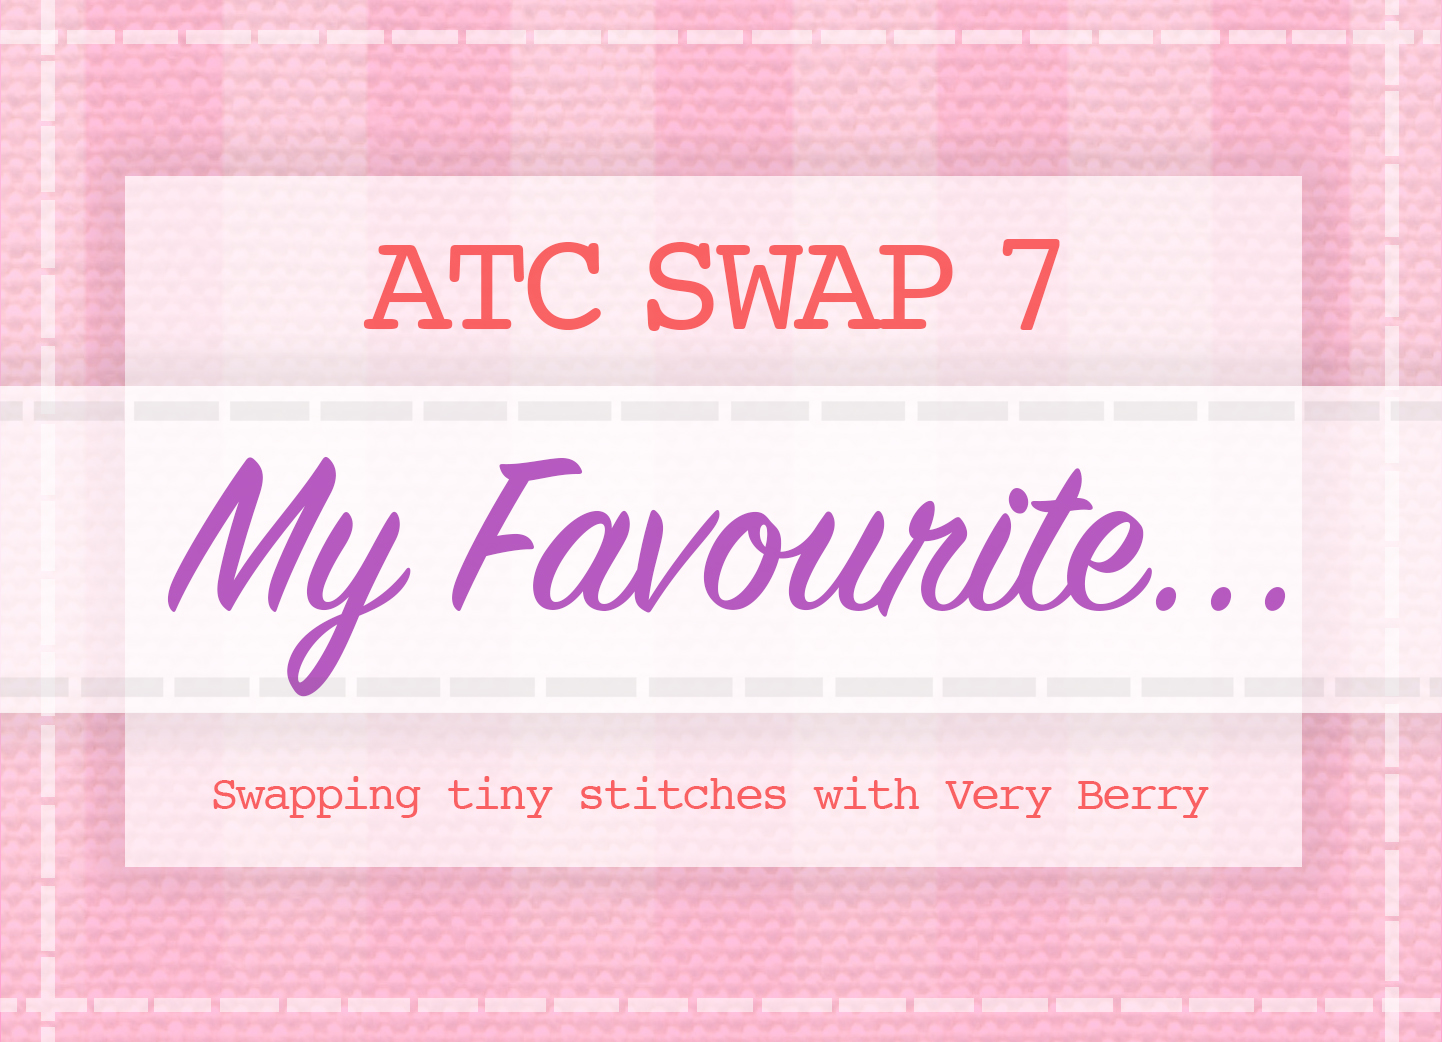 I took part in ATC Swap 7